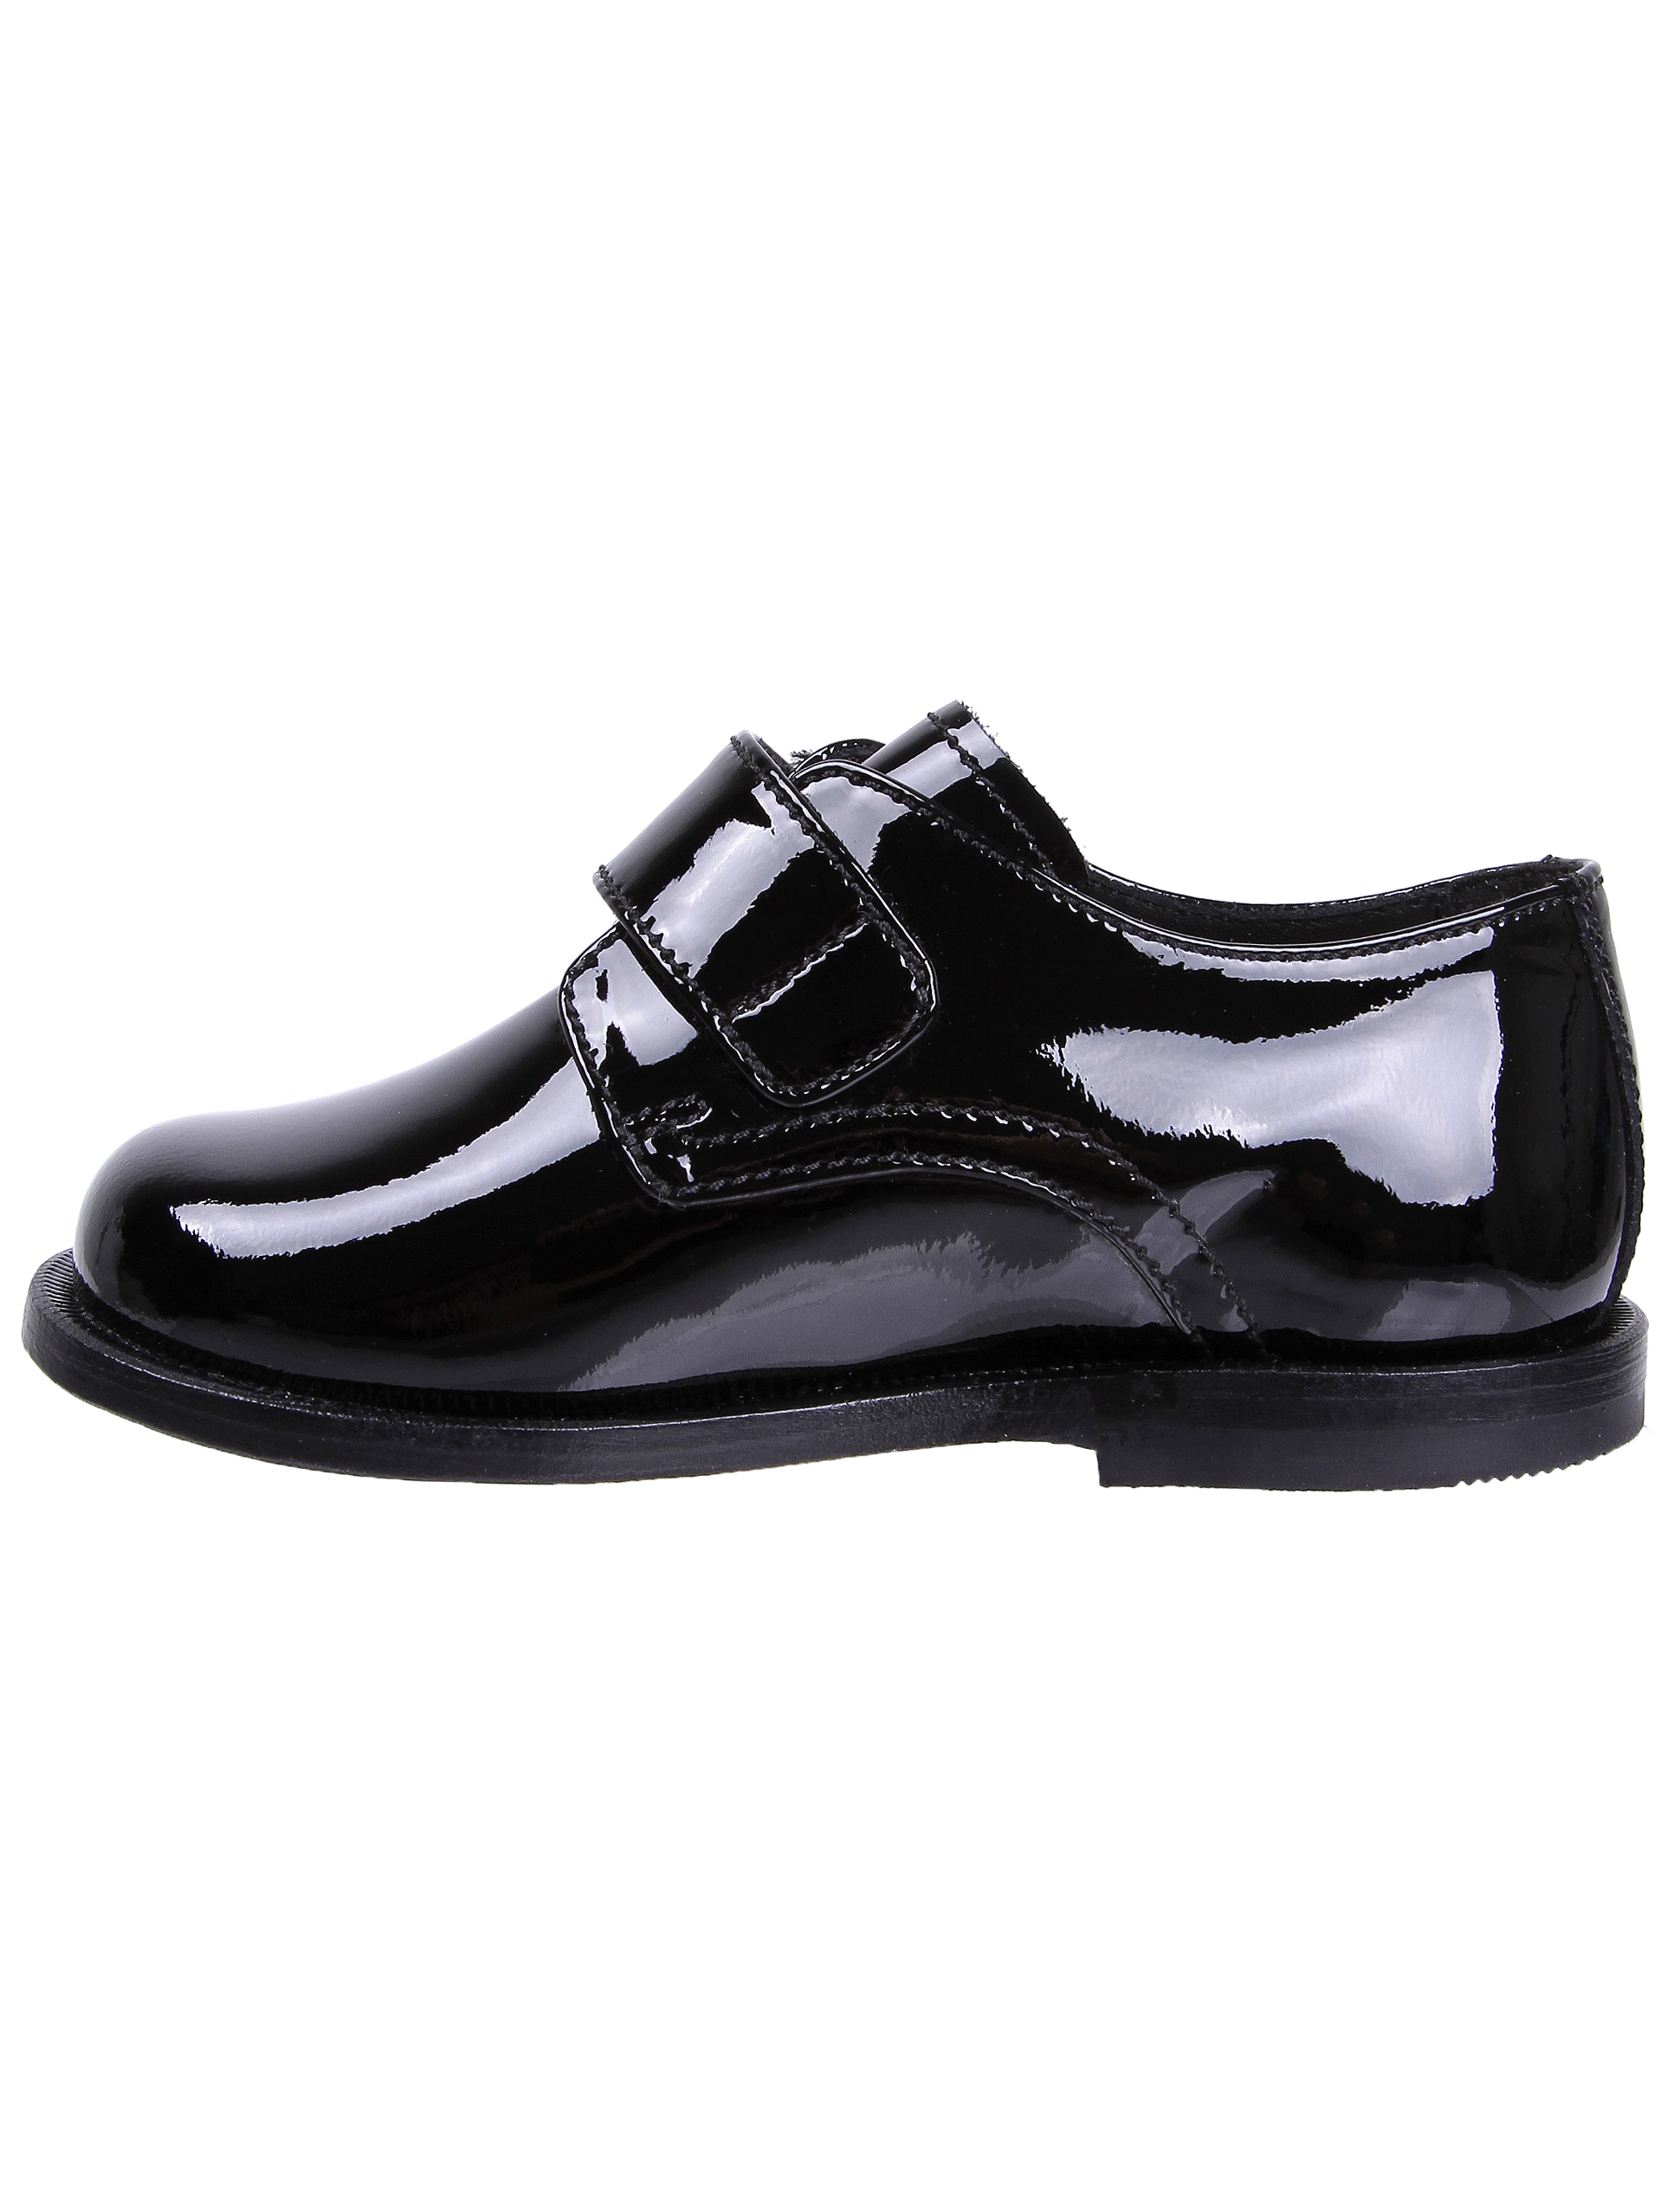 Туфли Missouri 1913233, цвет черный, размер 29 2011119880092 - фото 3